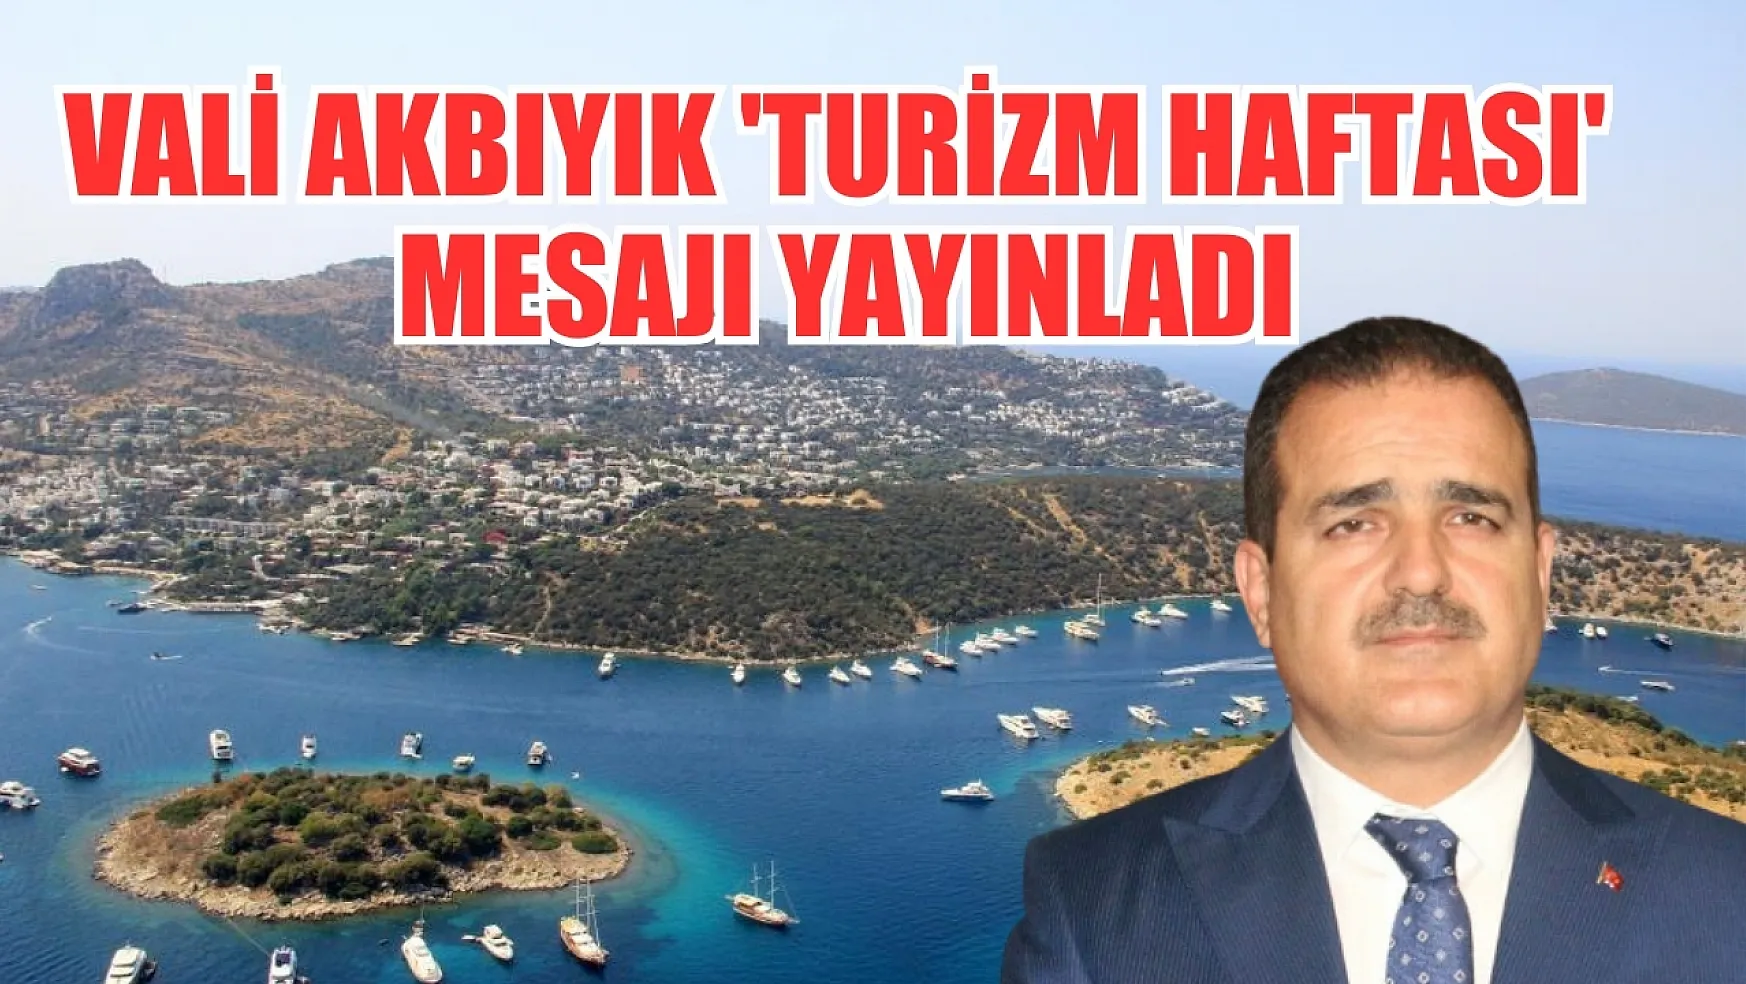 Vali Akbıyık 'Turizm Haftası' mesajı yayınladı